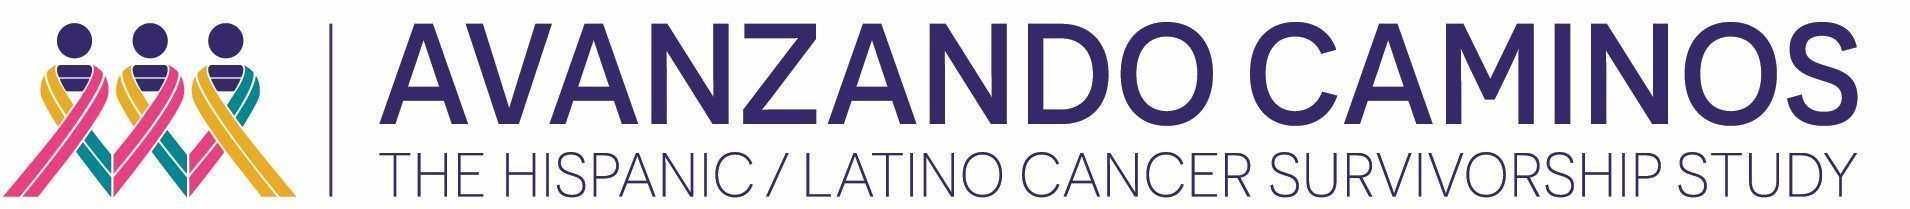 Avanzando Caminos latino cancer survivors logo